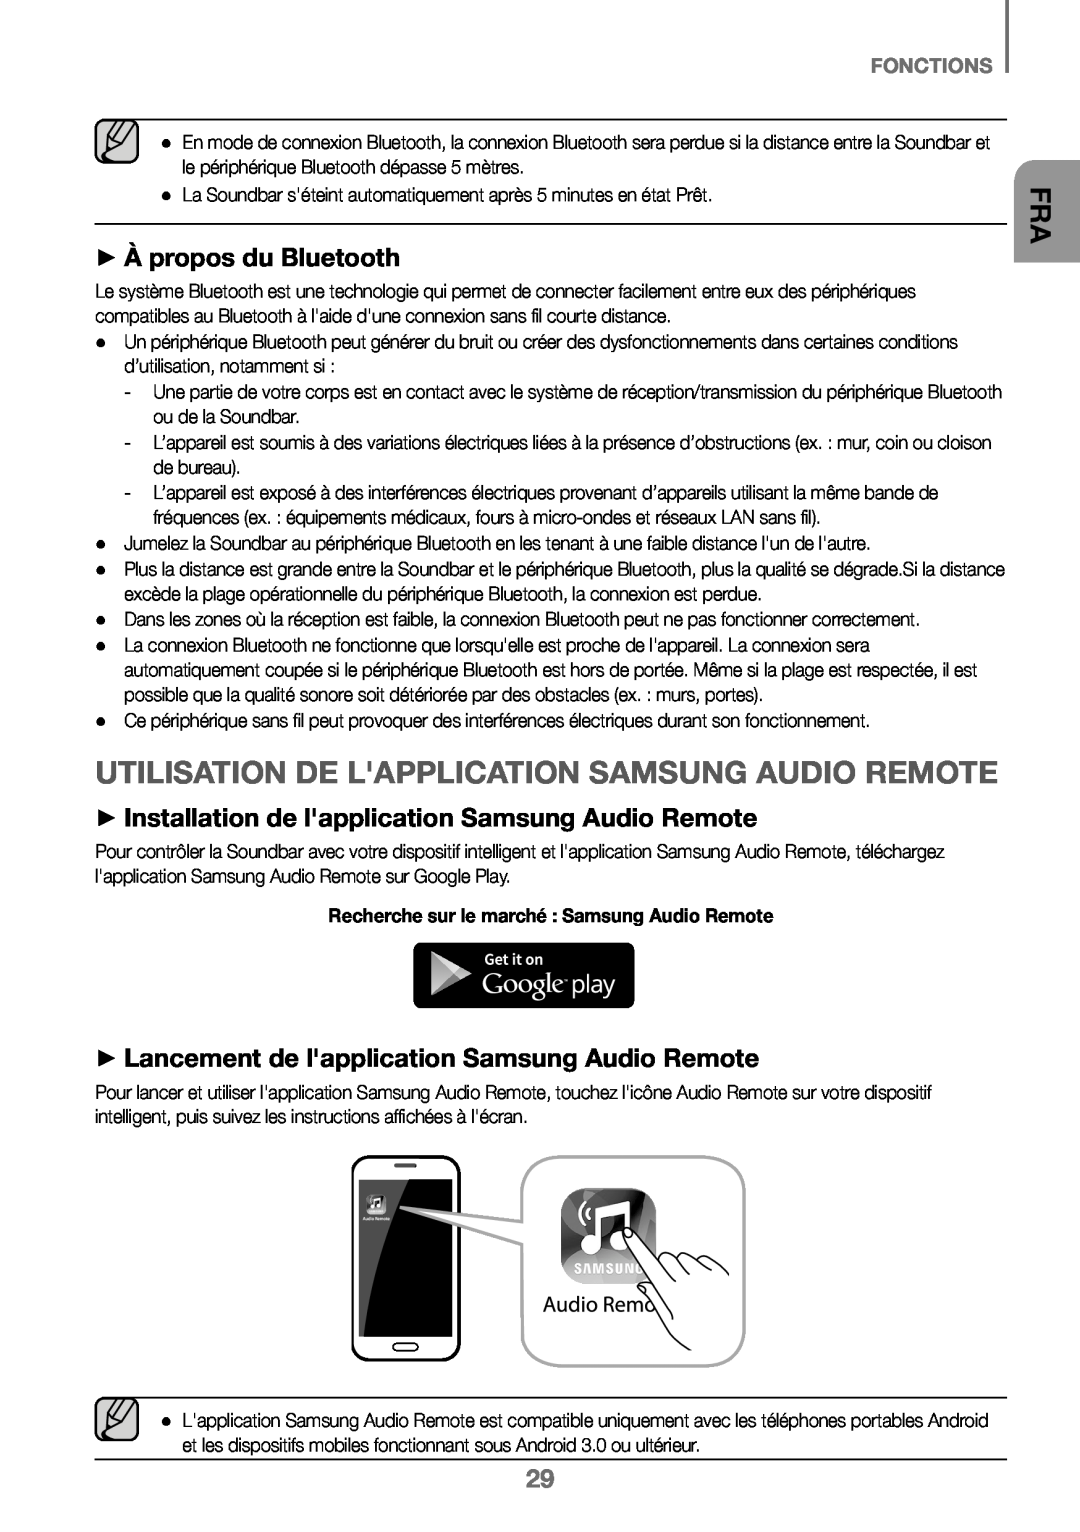 Samsung HW-K450/EN, HW-J450/EN manual ++À propos du Bluetooth, ++Lancement de lapplication Samsung Audio Remote, Fonctions 